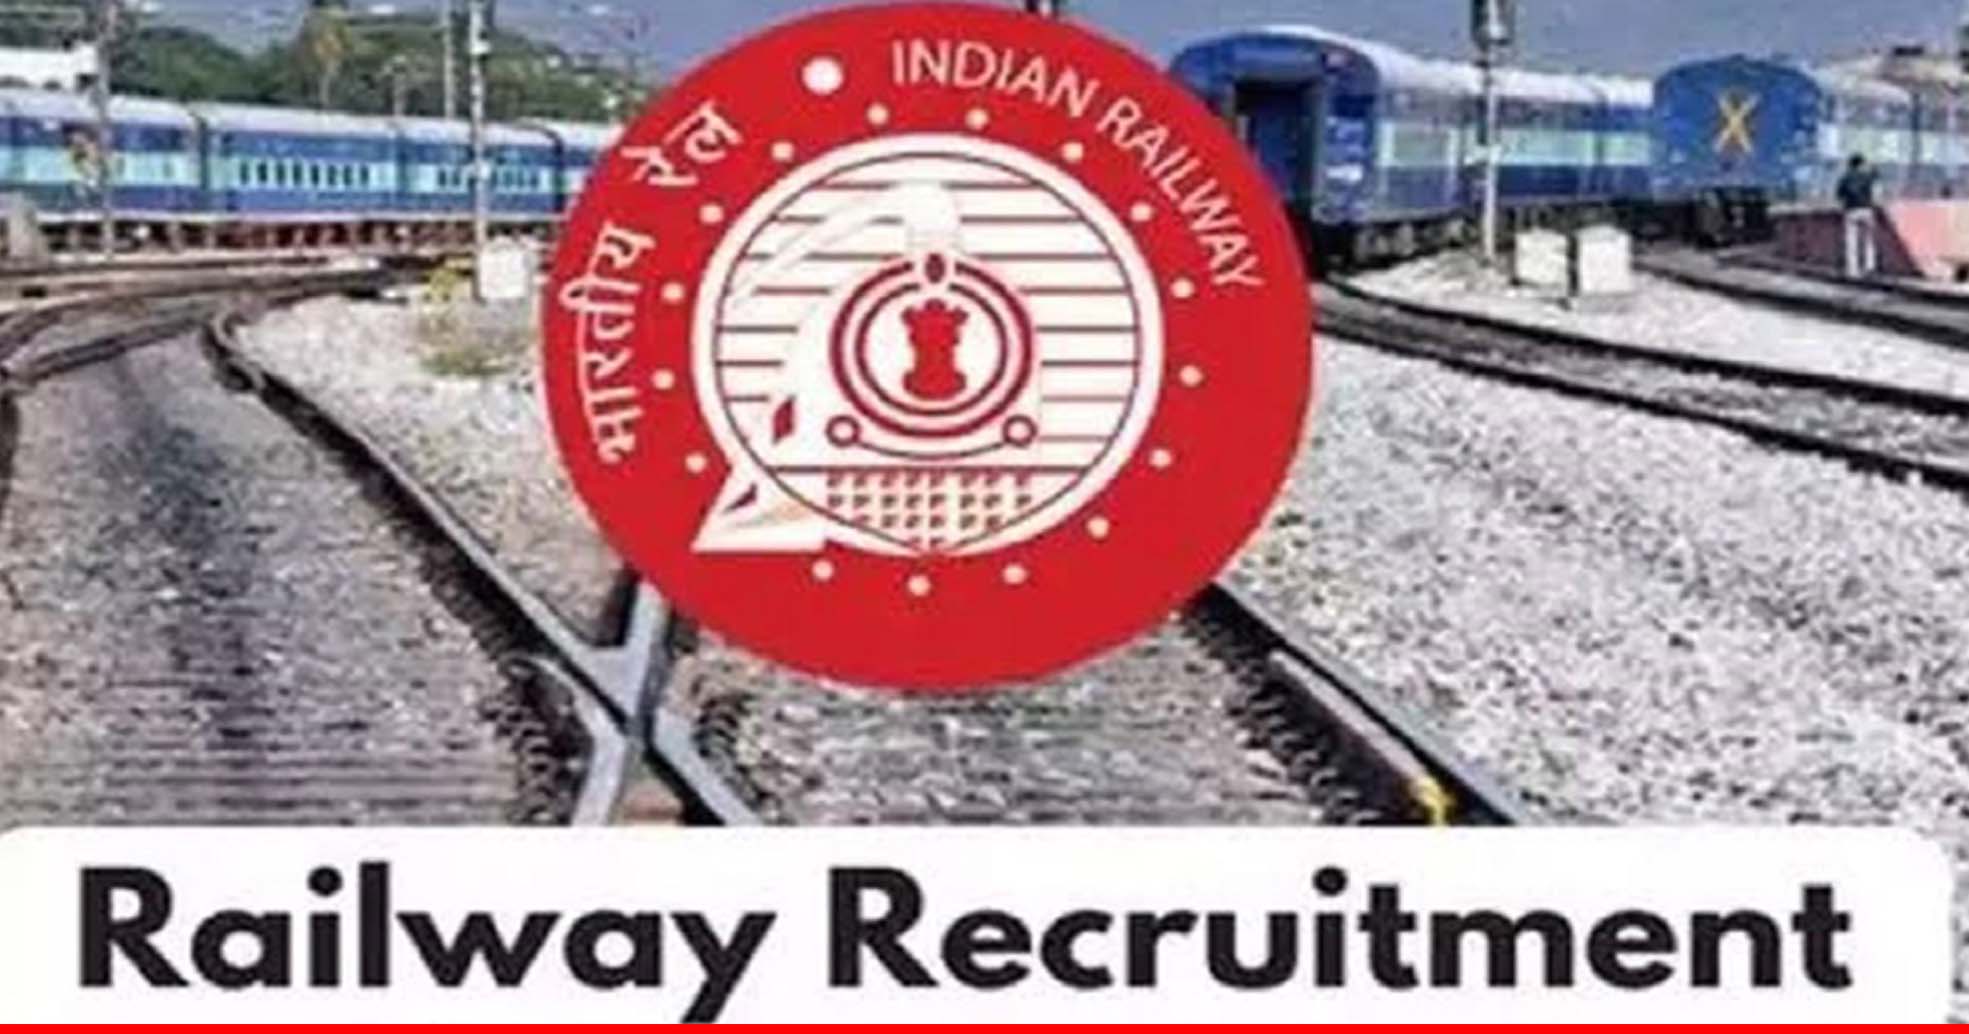 भारतीय रेलवे में नौकरी का मौका, जीडीएमओ समेत इन पदों पर निकली वैकेंसी